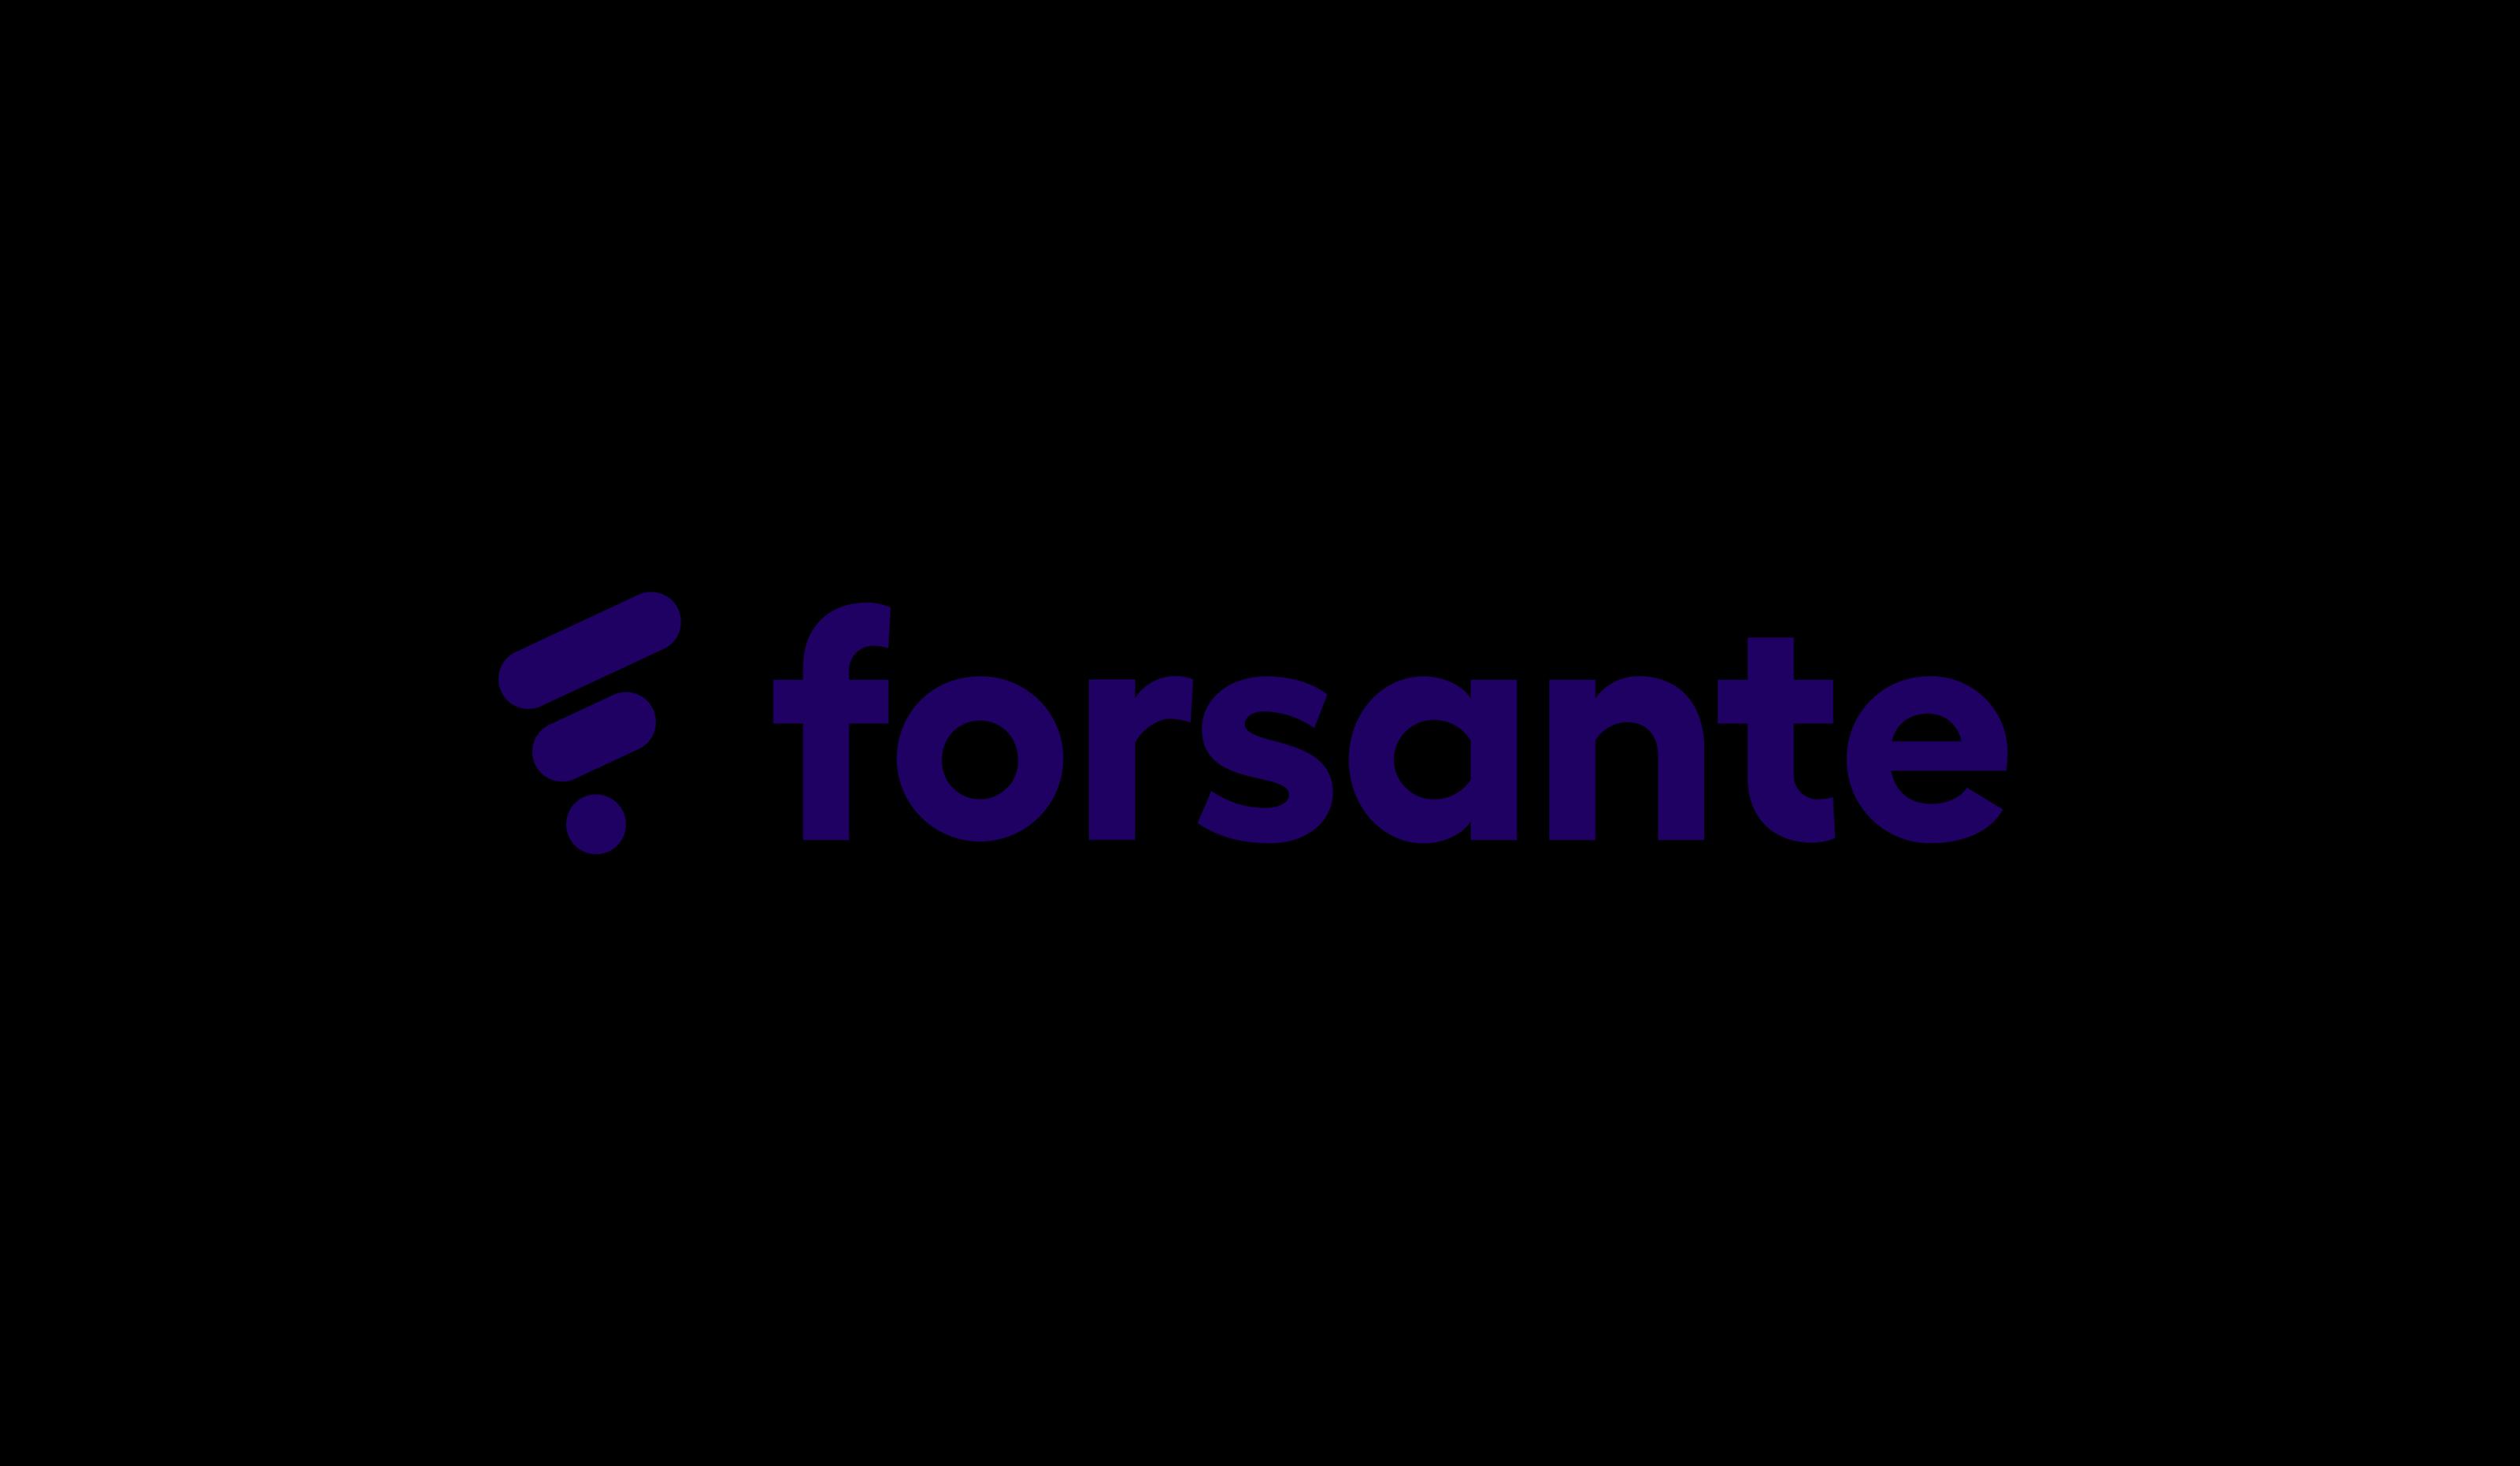 Forsante_logo